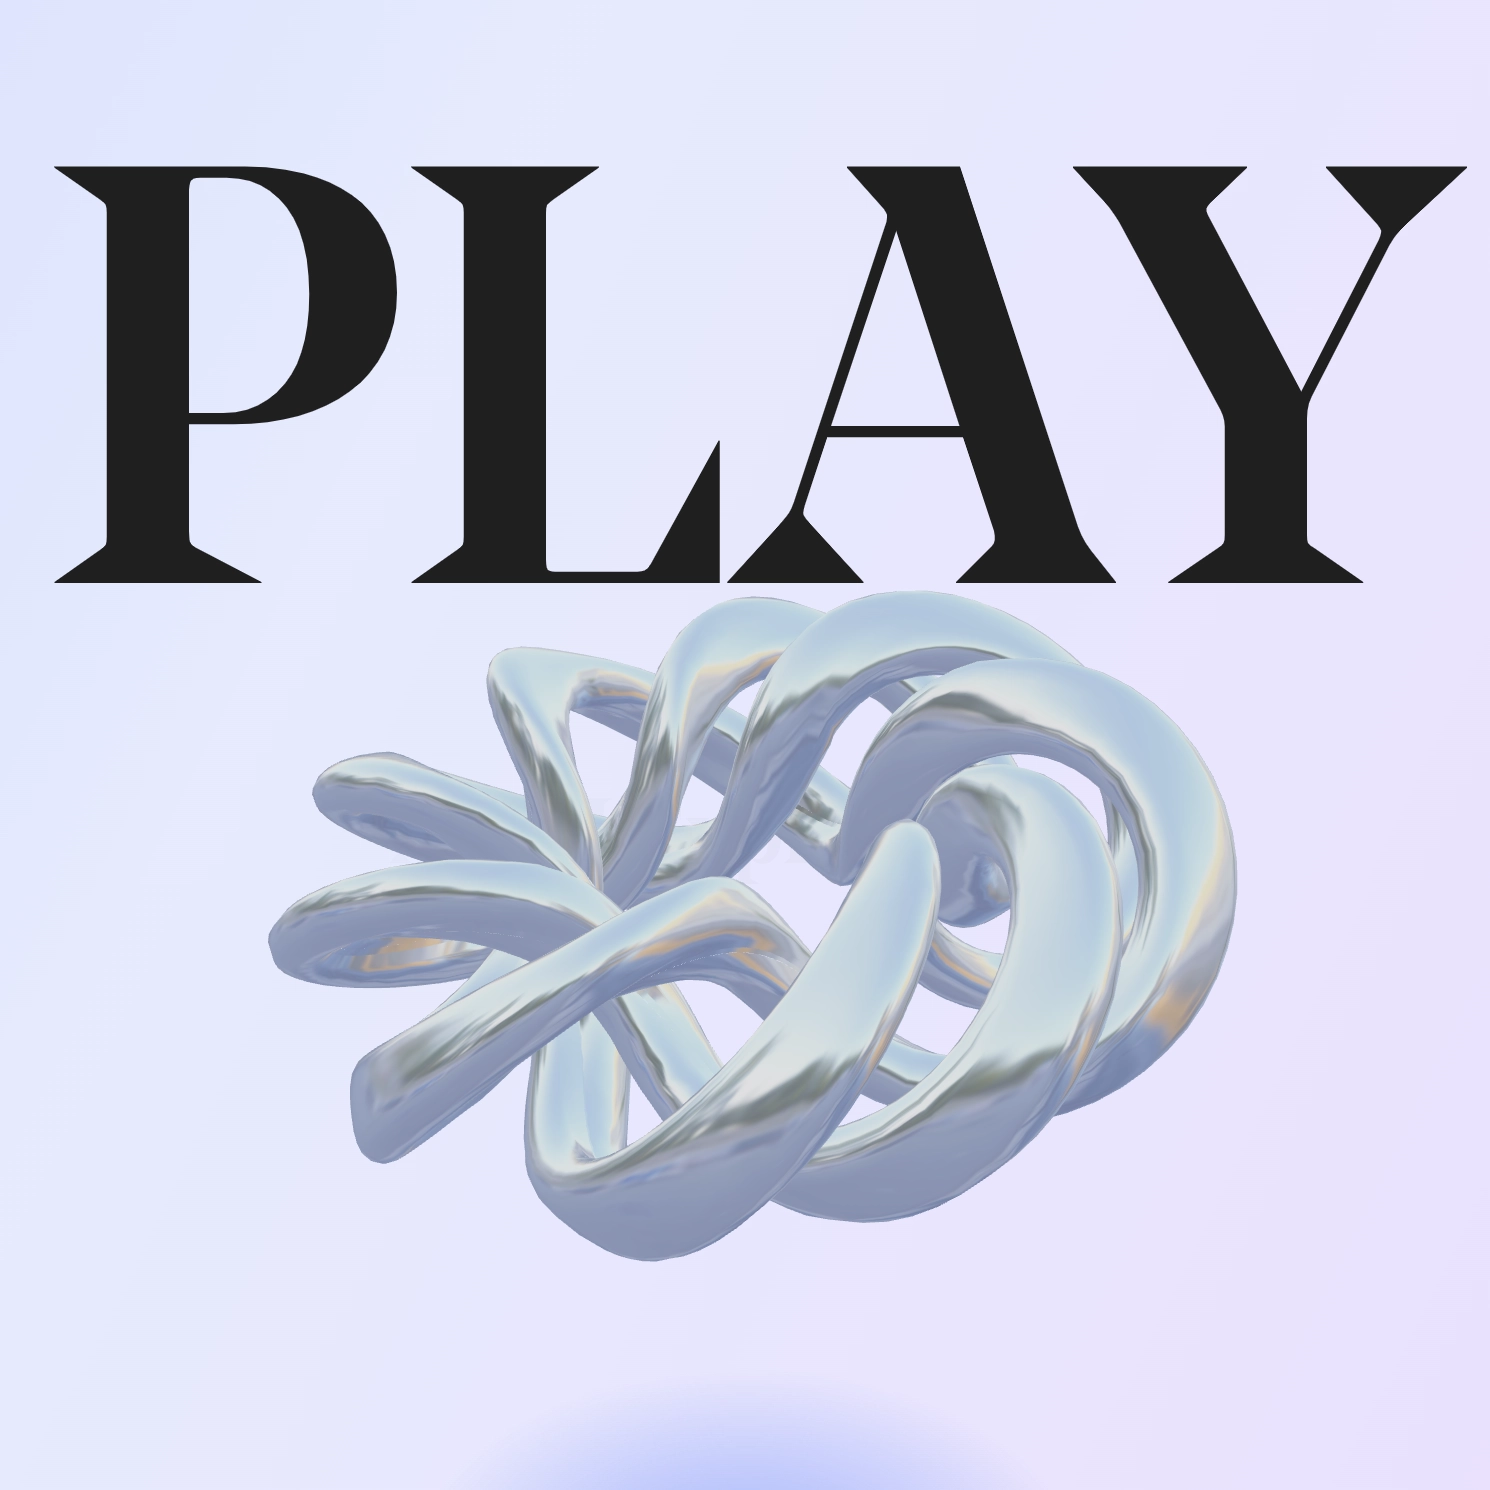 PLAY, an AI Exploration